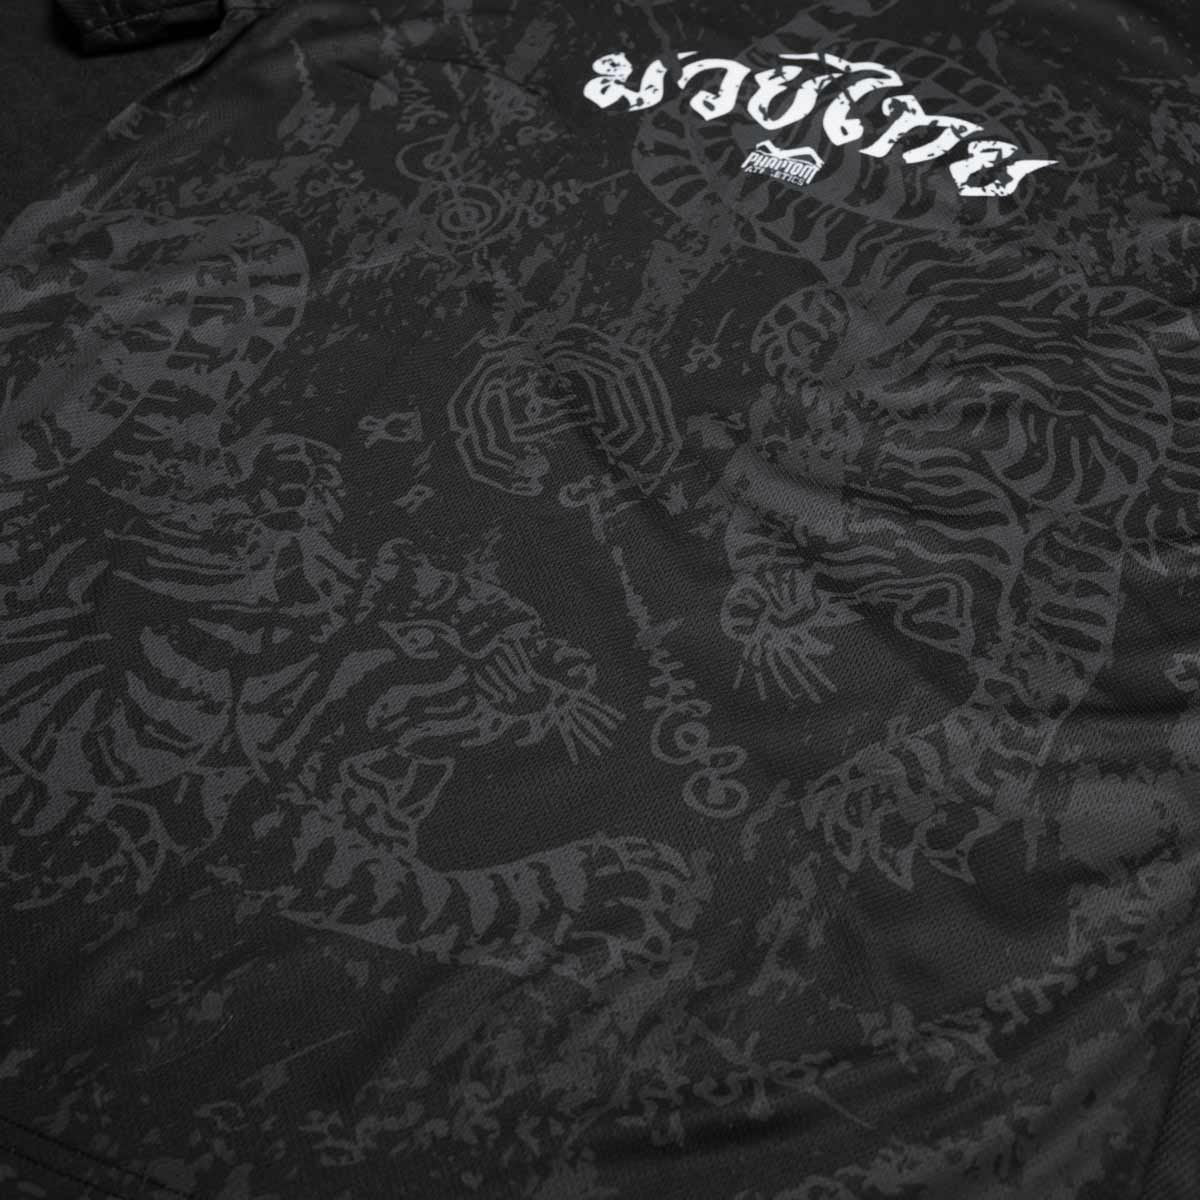 Phantom EVO Trainingsshirt im Muay Thai Design für Kampfsport Training. Mit thailändischer Schrift und Sak Yant Grafiken. Hochwertiger Sublimationsdruck für eine lange Lebensdauer.